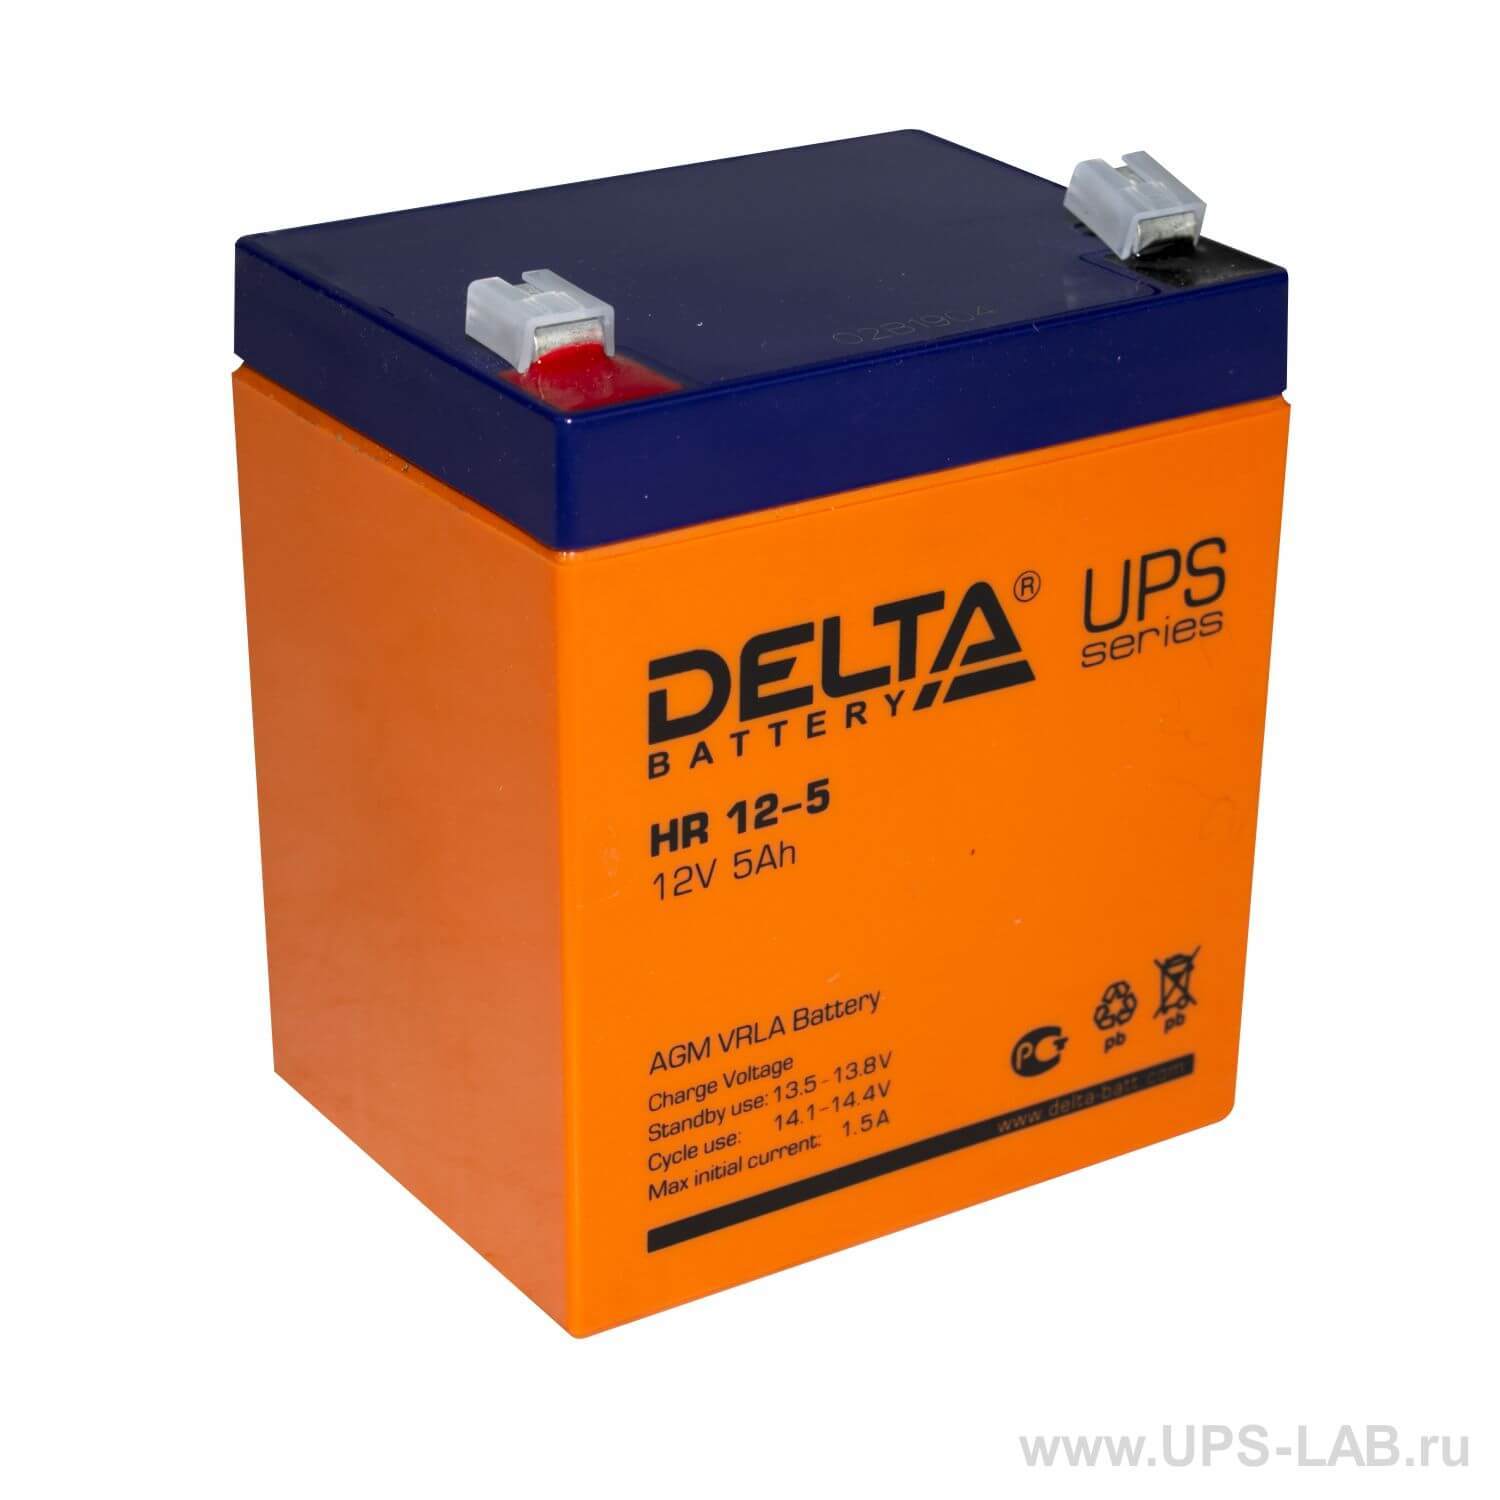 Battery 12 12. Аккумуляторная батарея Delta HR 12-5 (12v / 5ah). Аккумуляторная батарея Delta Battery HR 12-5. Delta hr12-12 (12в/12ач). Аккумуляторная батарея Delta HR 12-12 (12v / 12ah).